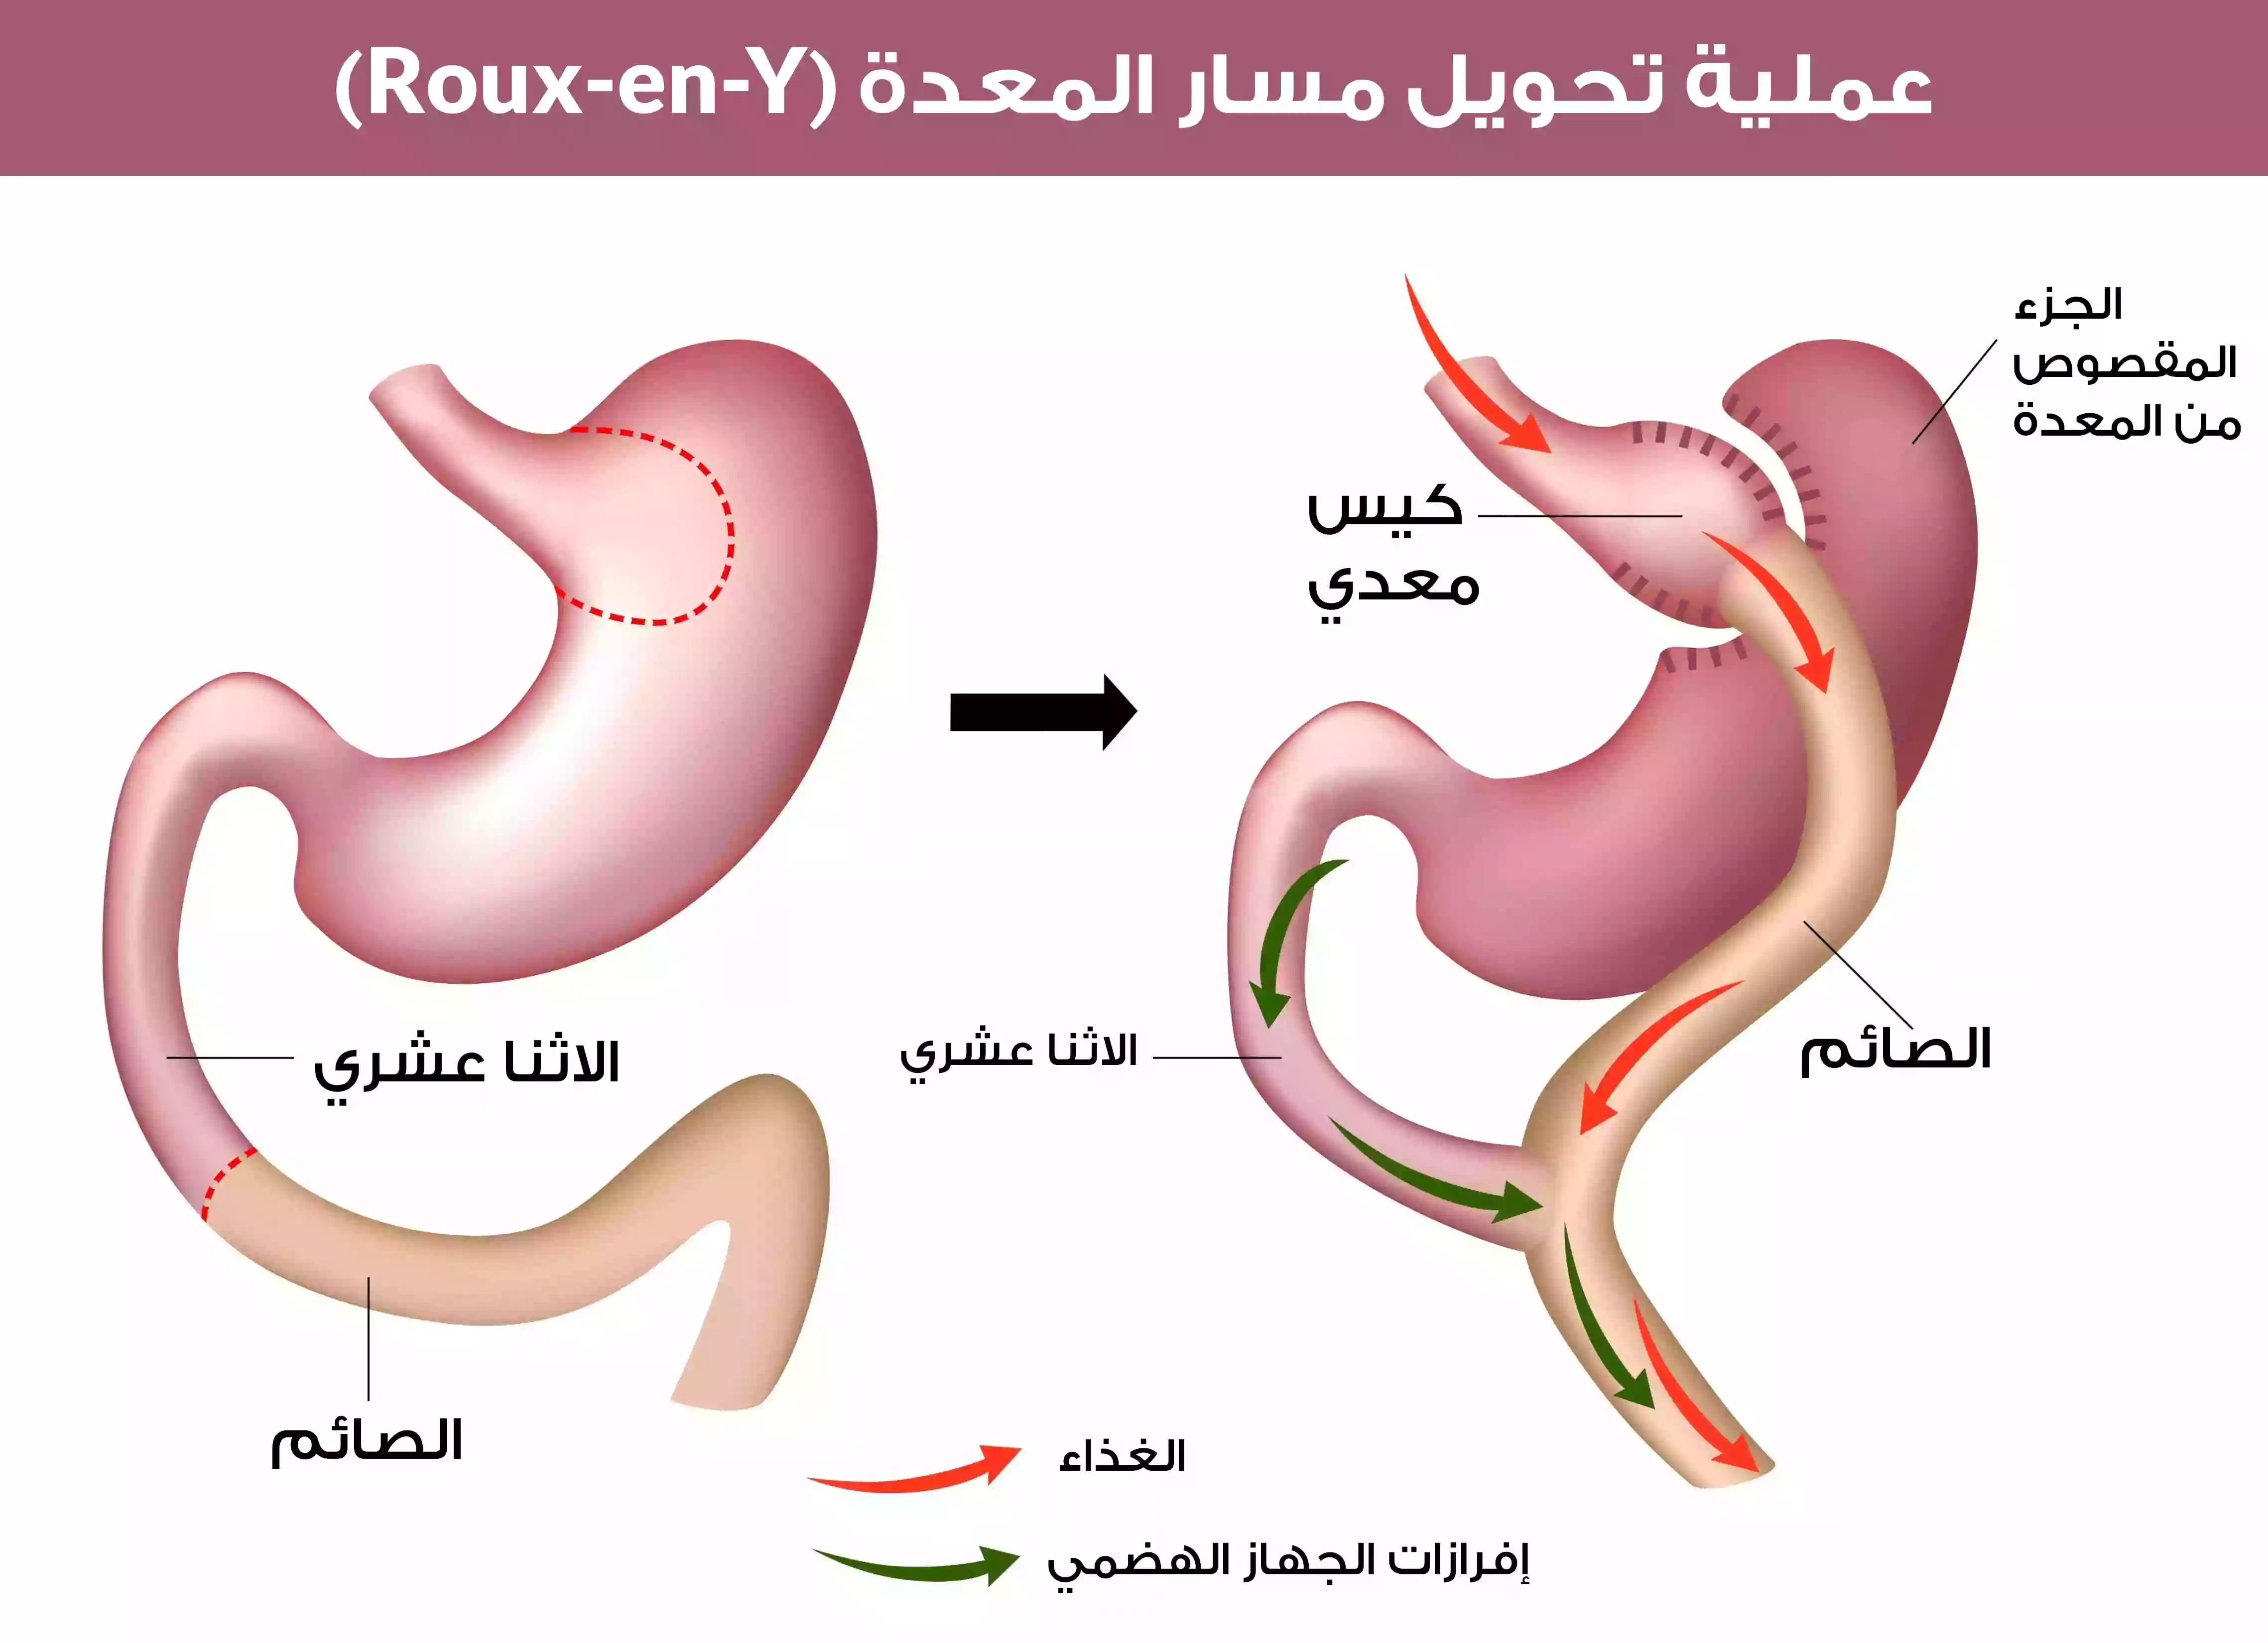 عملية تحويل مسار المعدة (Roux-en-Y) وهي من أشهر عمليات جراحة السمنة